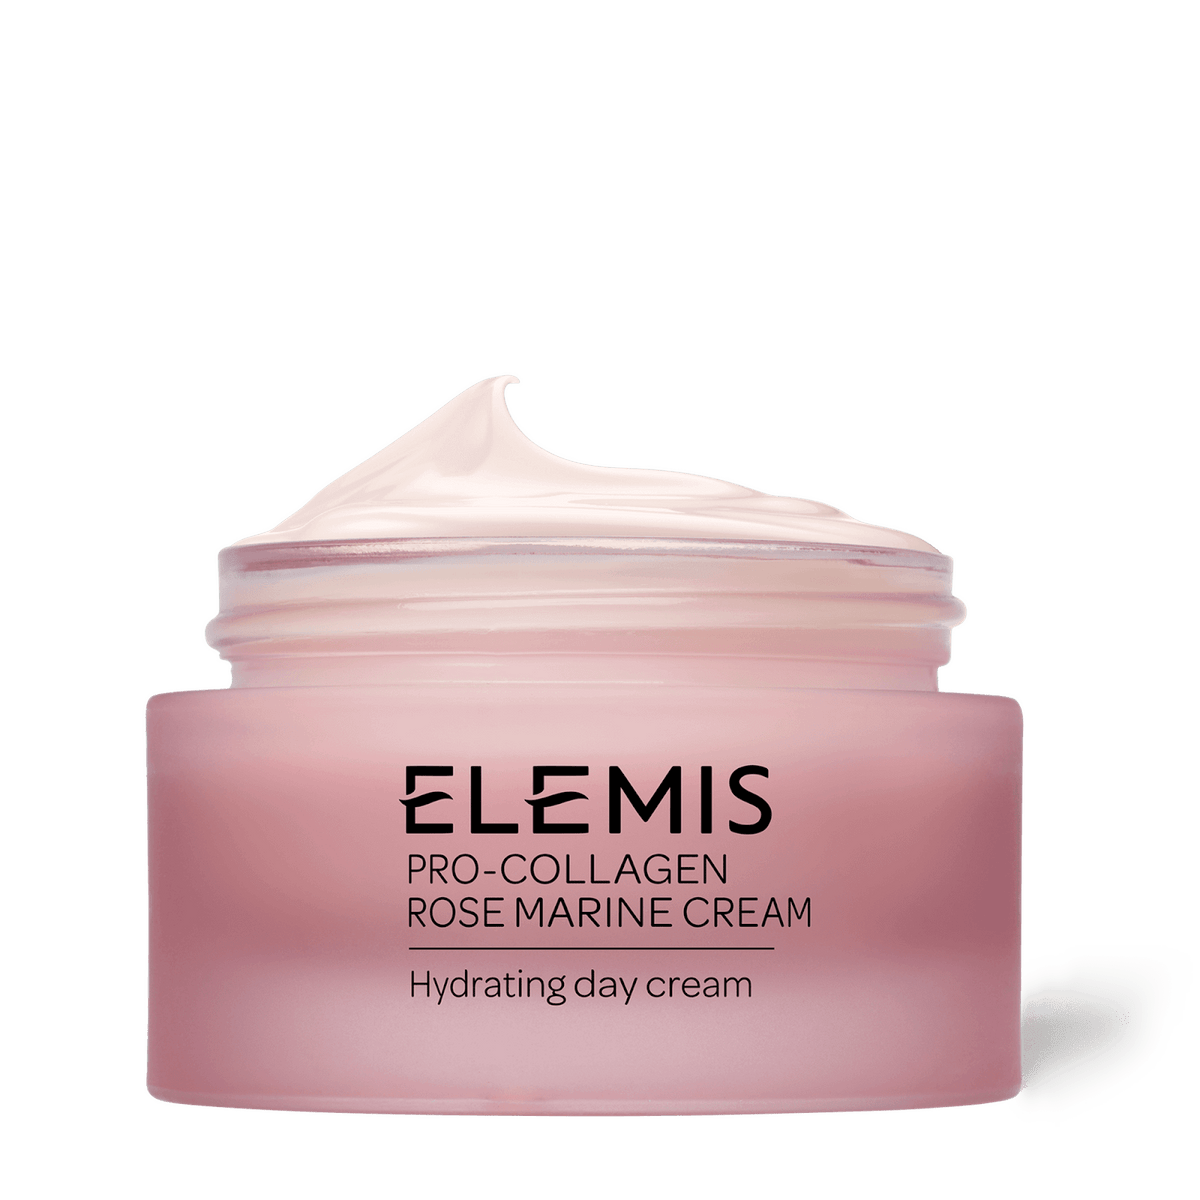 Elemis Pro-Collagen Rose Marine Cream face cream 50ml